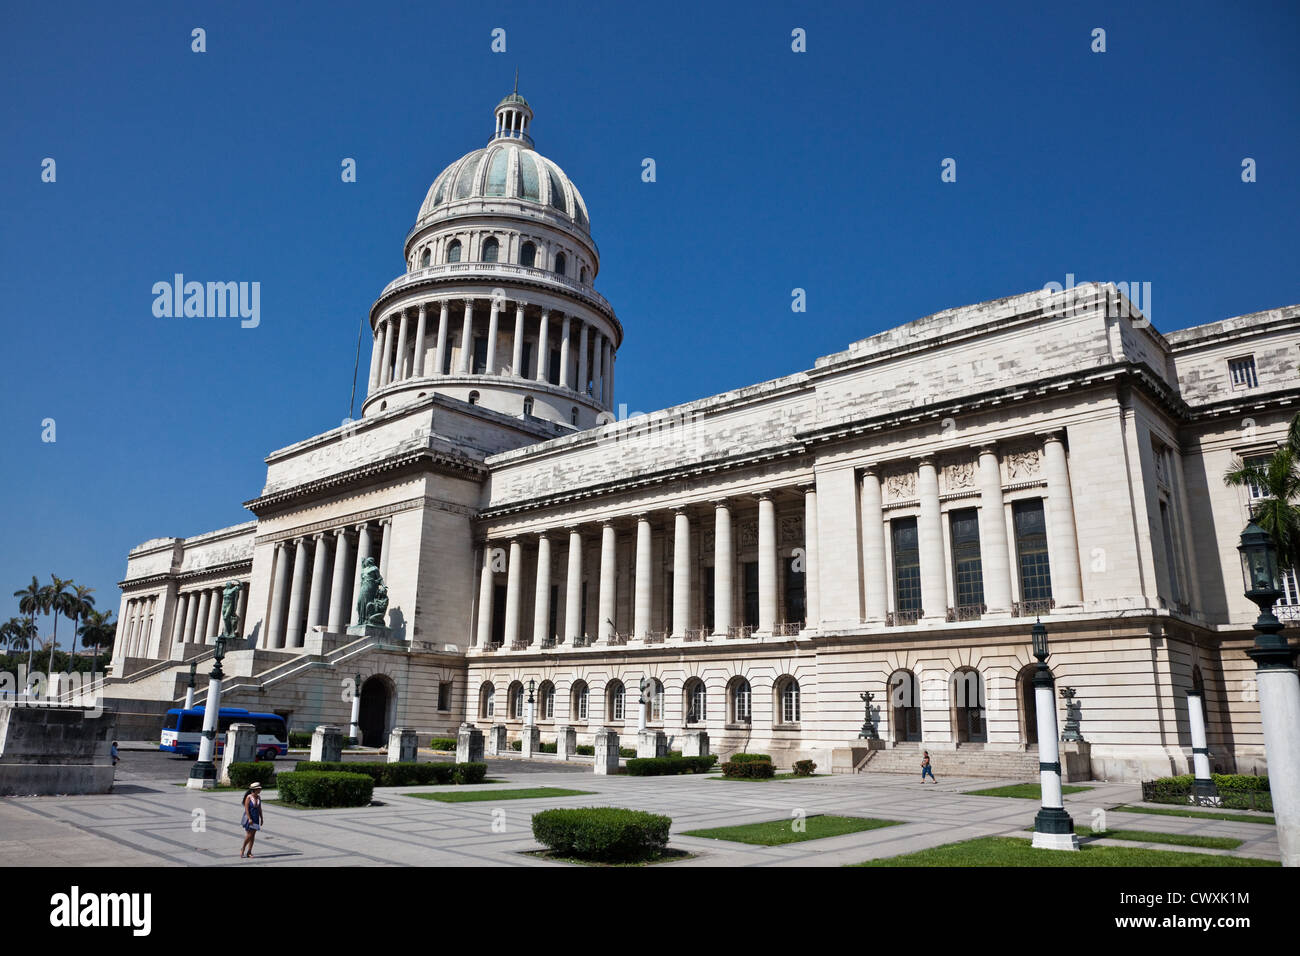 Die atemberaubende El Capitolio in Havanna Gebäude ist ein wunderbares Wahrzeichen. Stockfoto